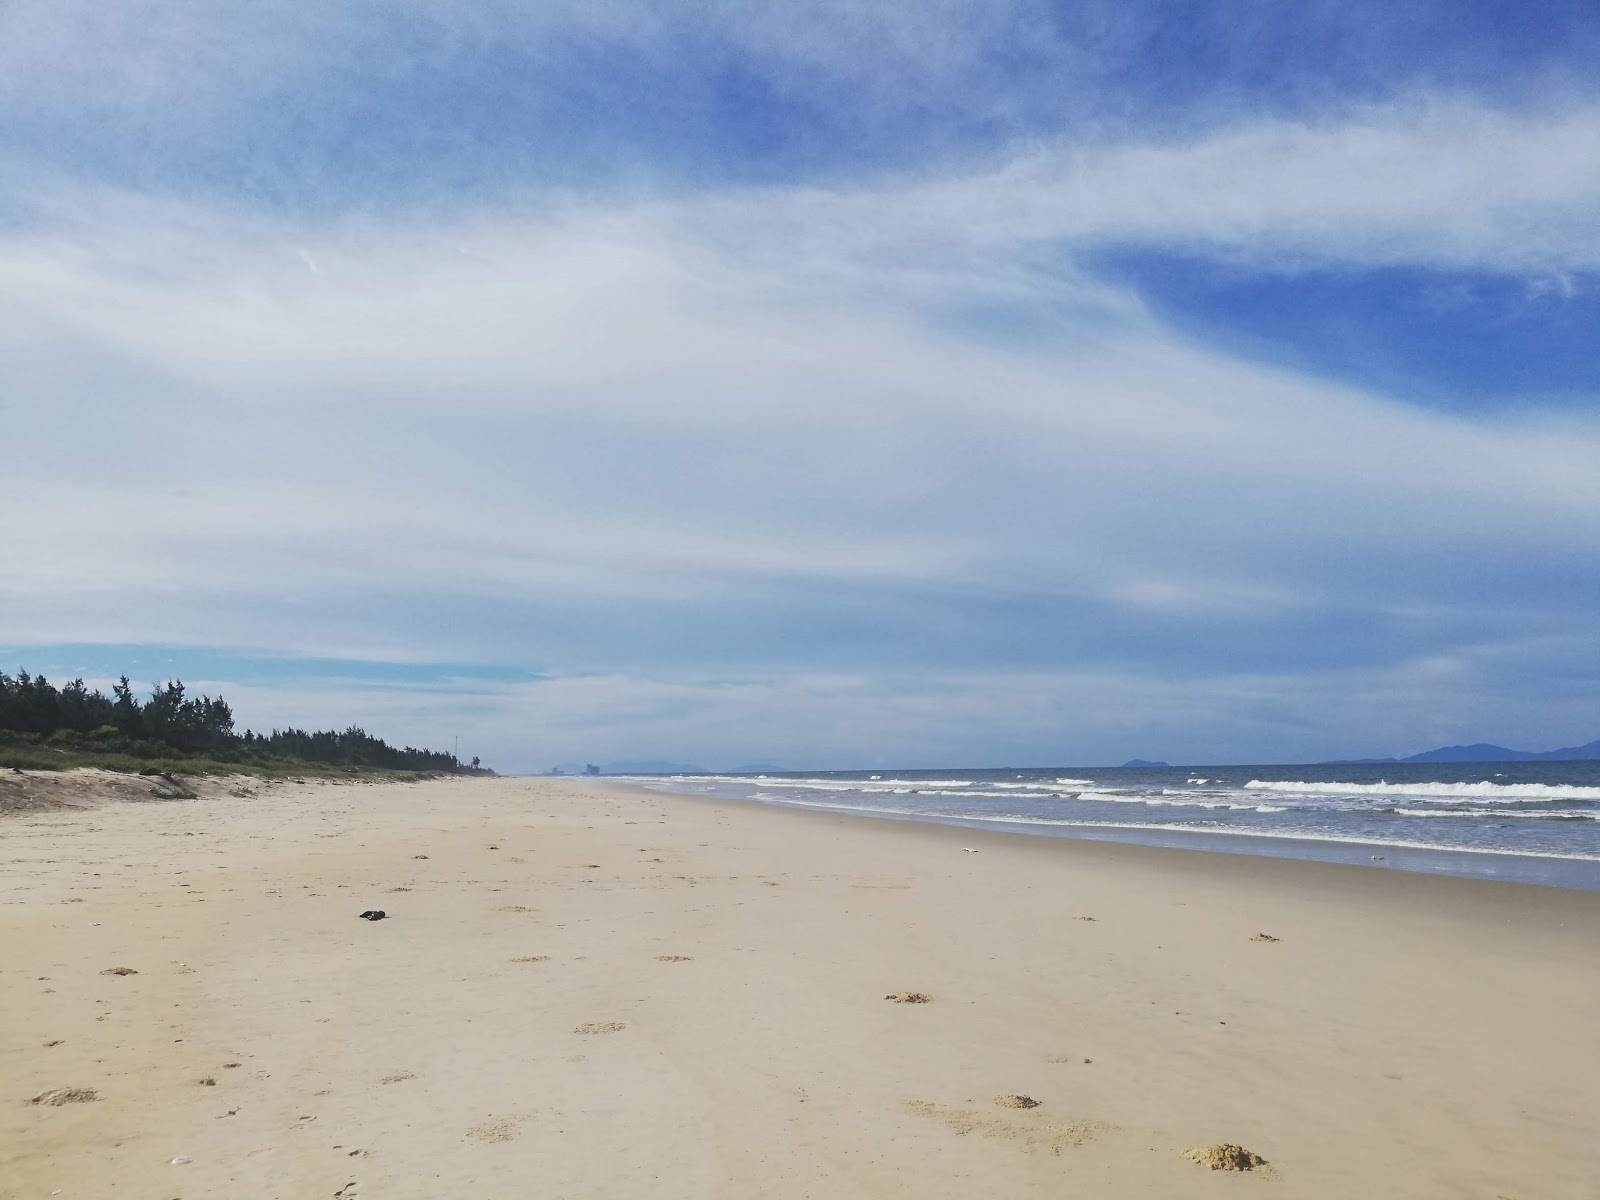 Zdjęcie Dawn Beach z powierzchnią jasny, drobny piasek